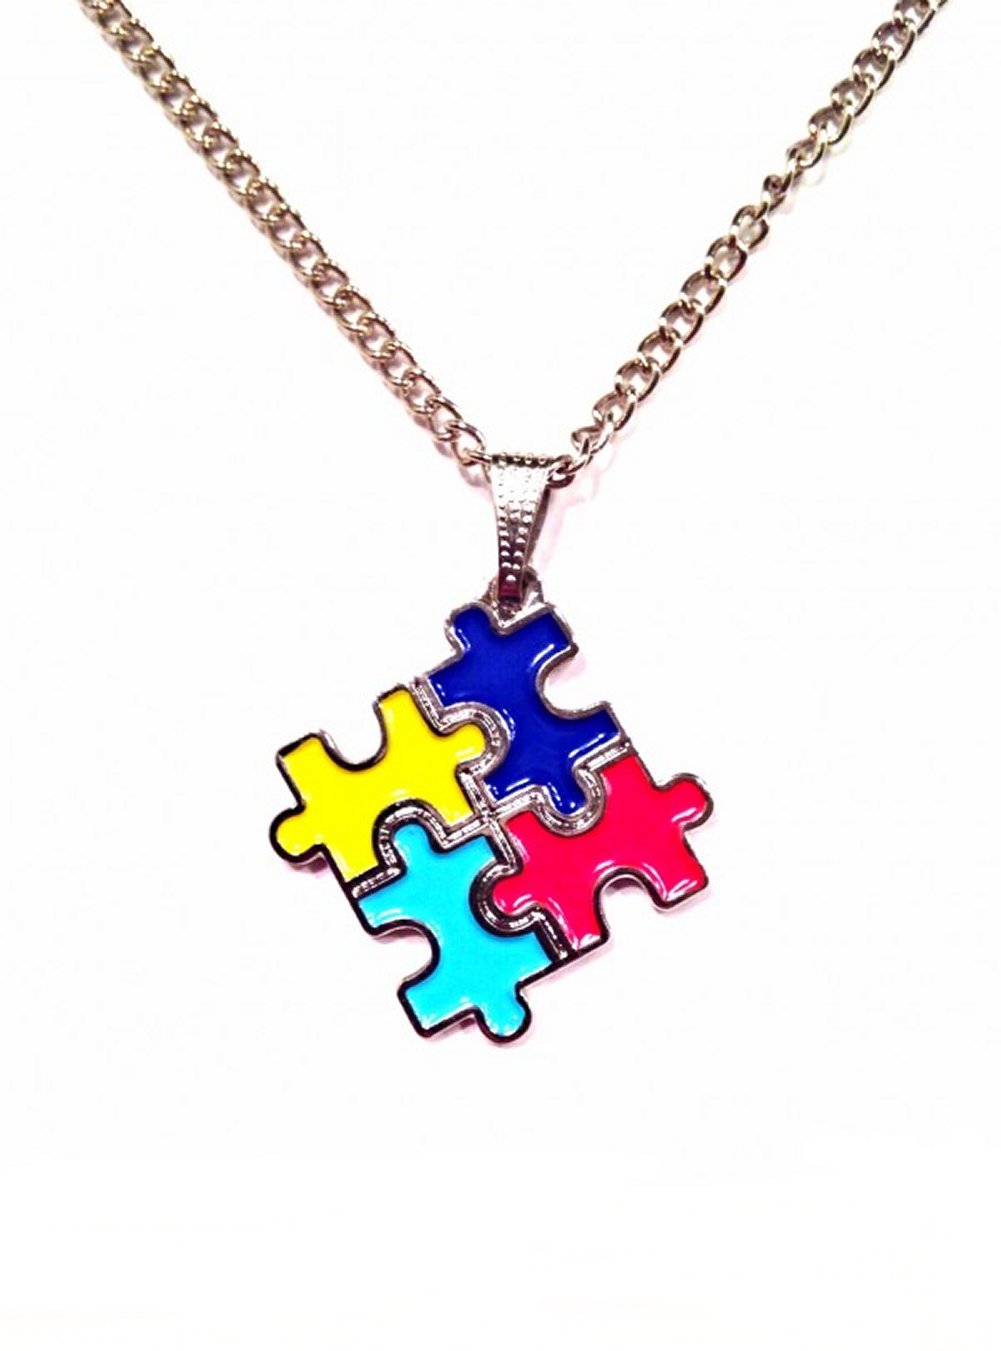 Autism Charm Necklace,autism ribbon necklace,autism jewelry,autism awareness jewelry,autism awareness ribbon,autism ribbon charm,autism